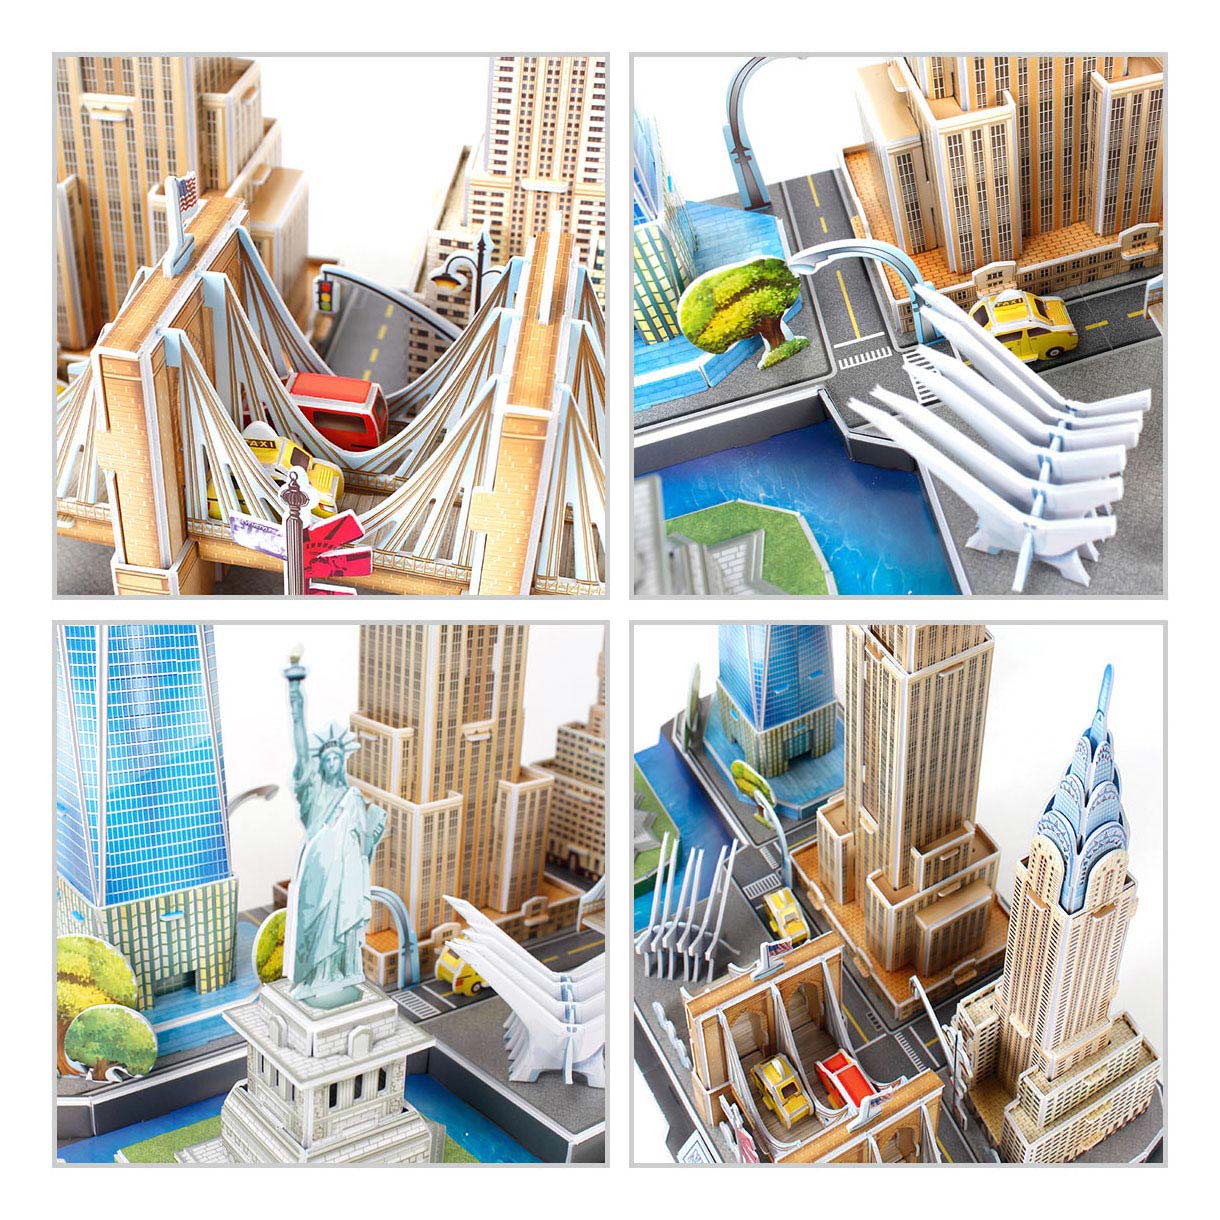 Revell 3D-Puzzle-Bausatz – Skyline von New York